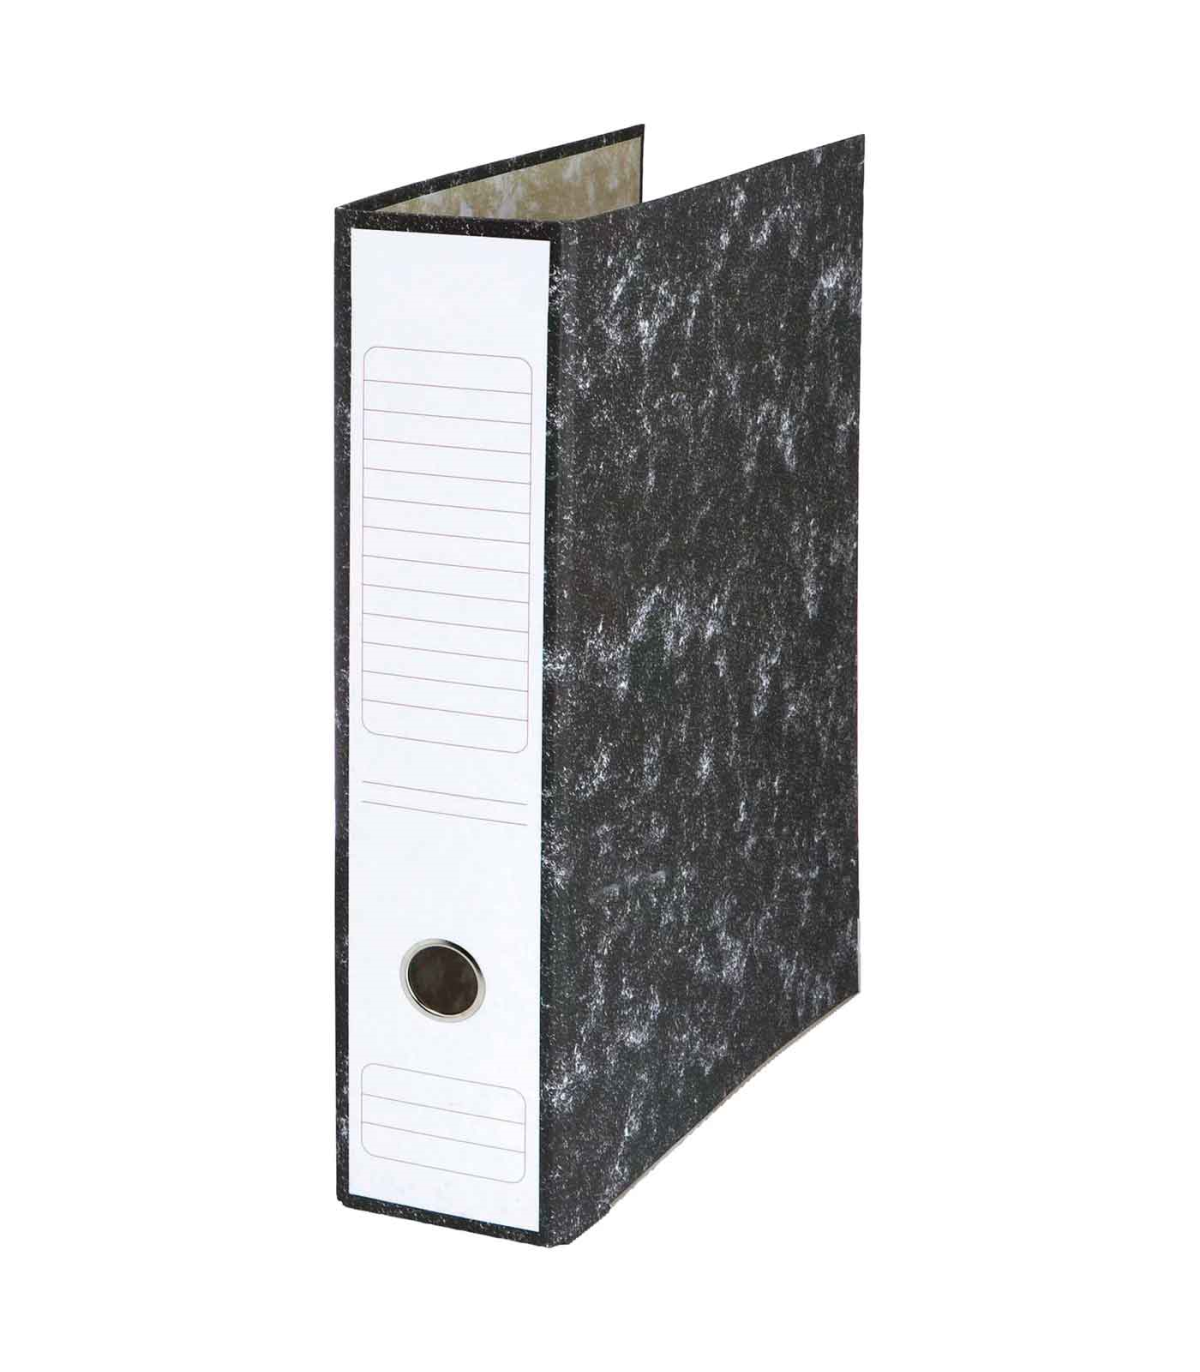 Tradineur - Archivador A-Z con caja - Fabricado en cartón - Ideal para  guardar, archivar u ordenar los documentos - 35 x 8 x 29